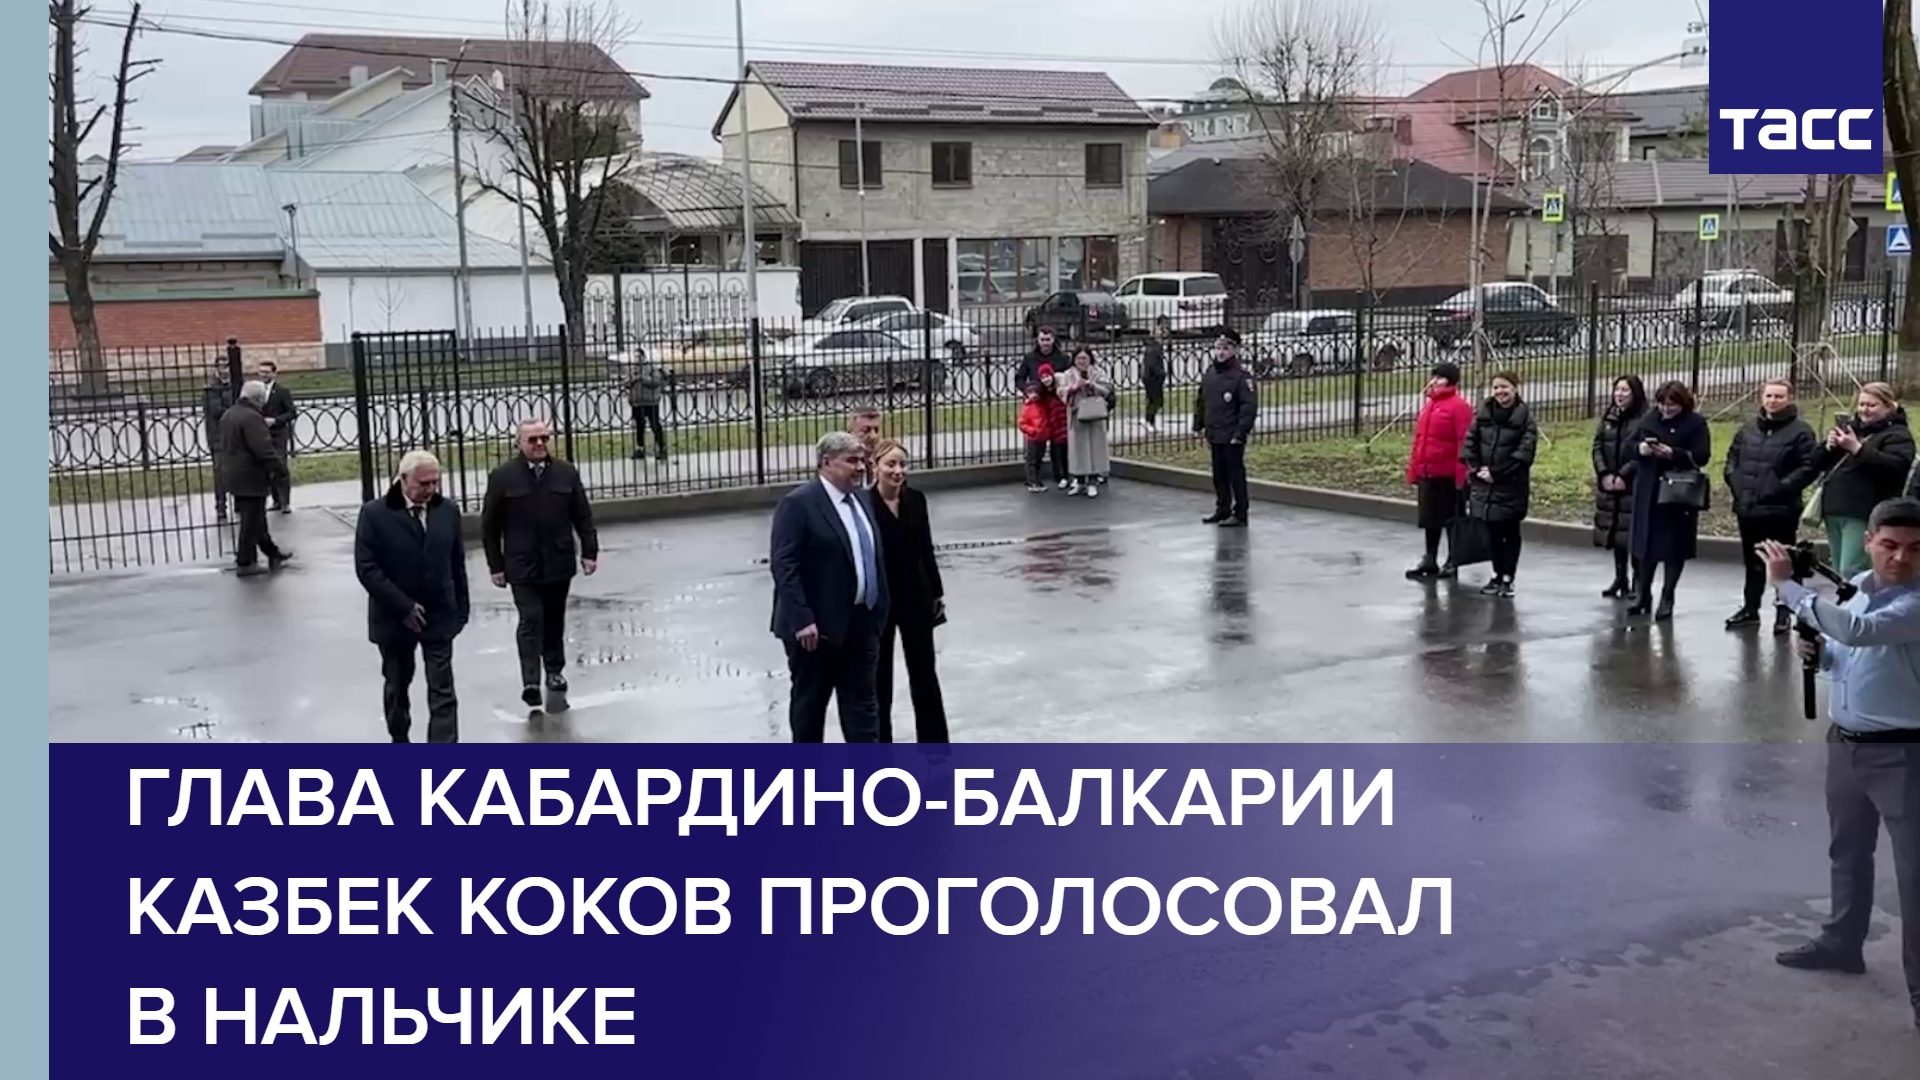 Глава Кабардино-Балкарии Казбек Коков проголосовал на 123 избирательном участке